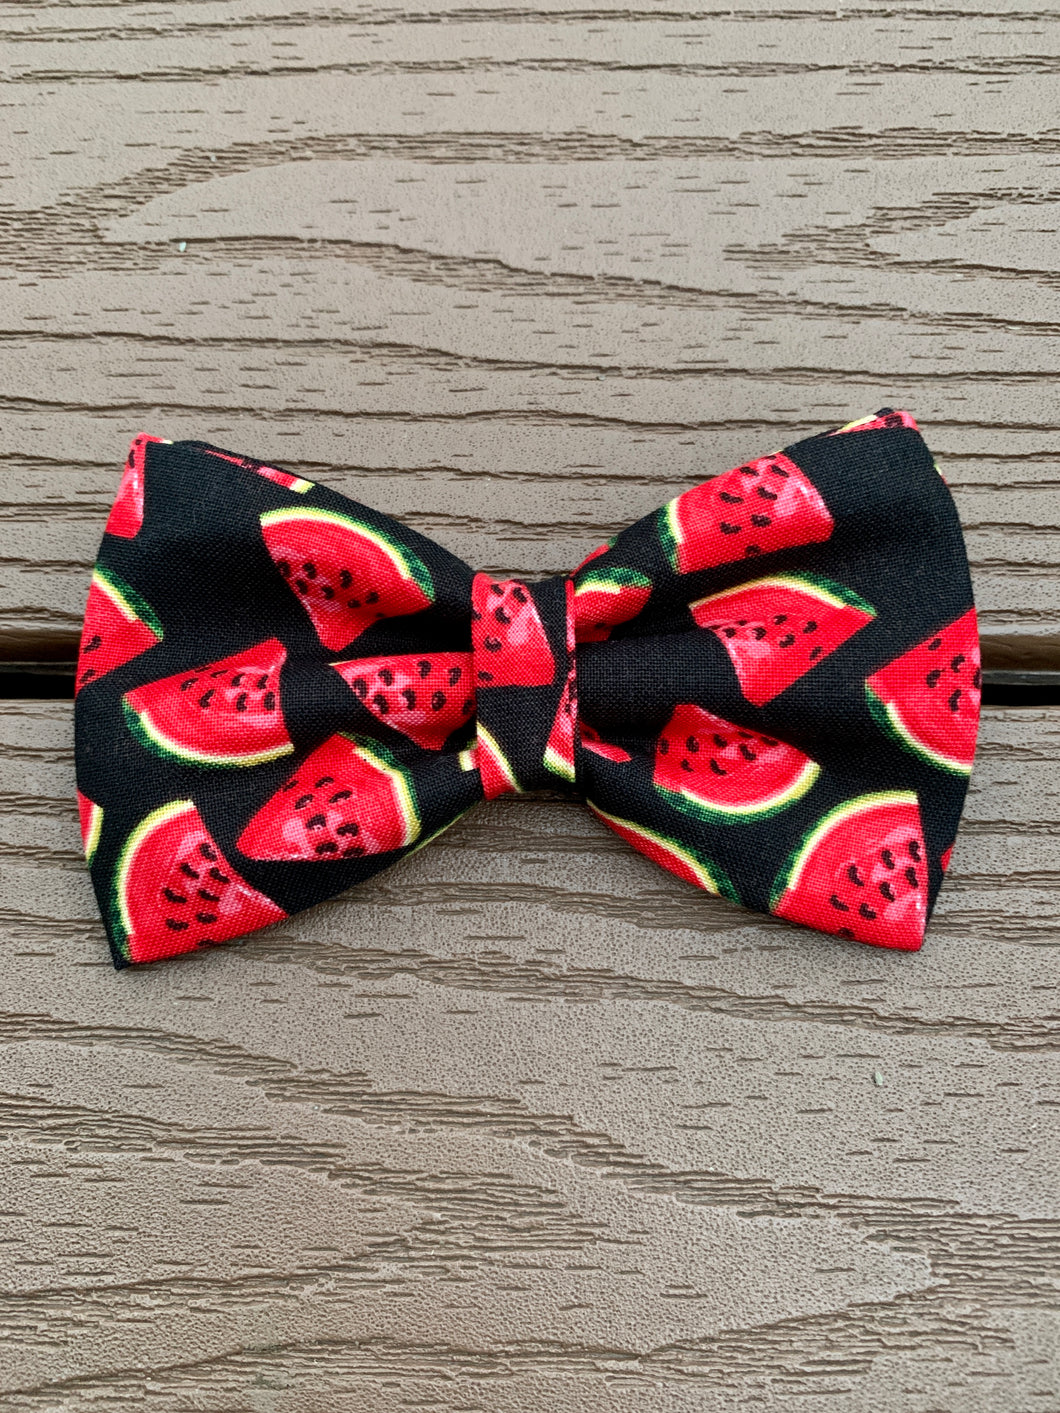 “Watermelon” Bow tie